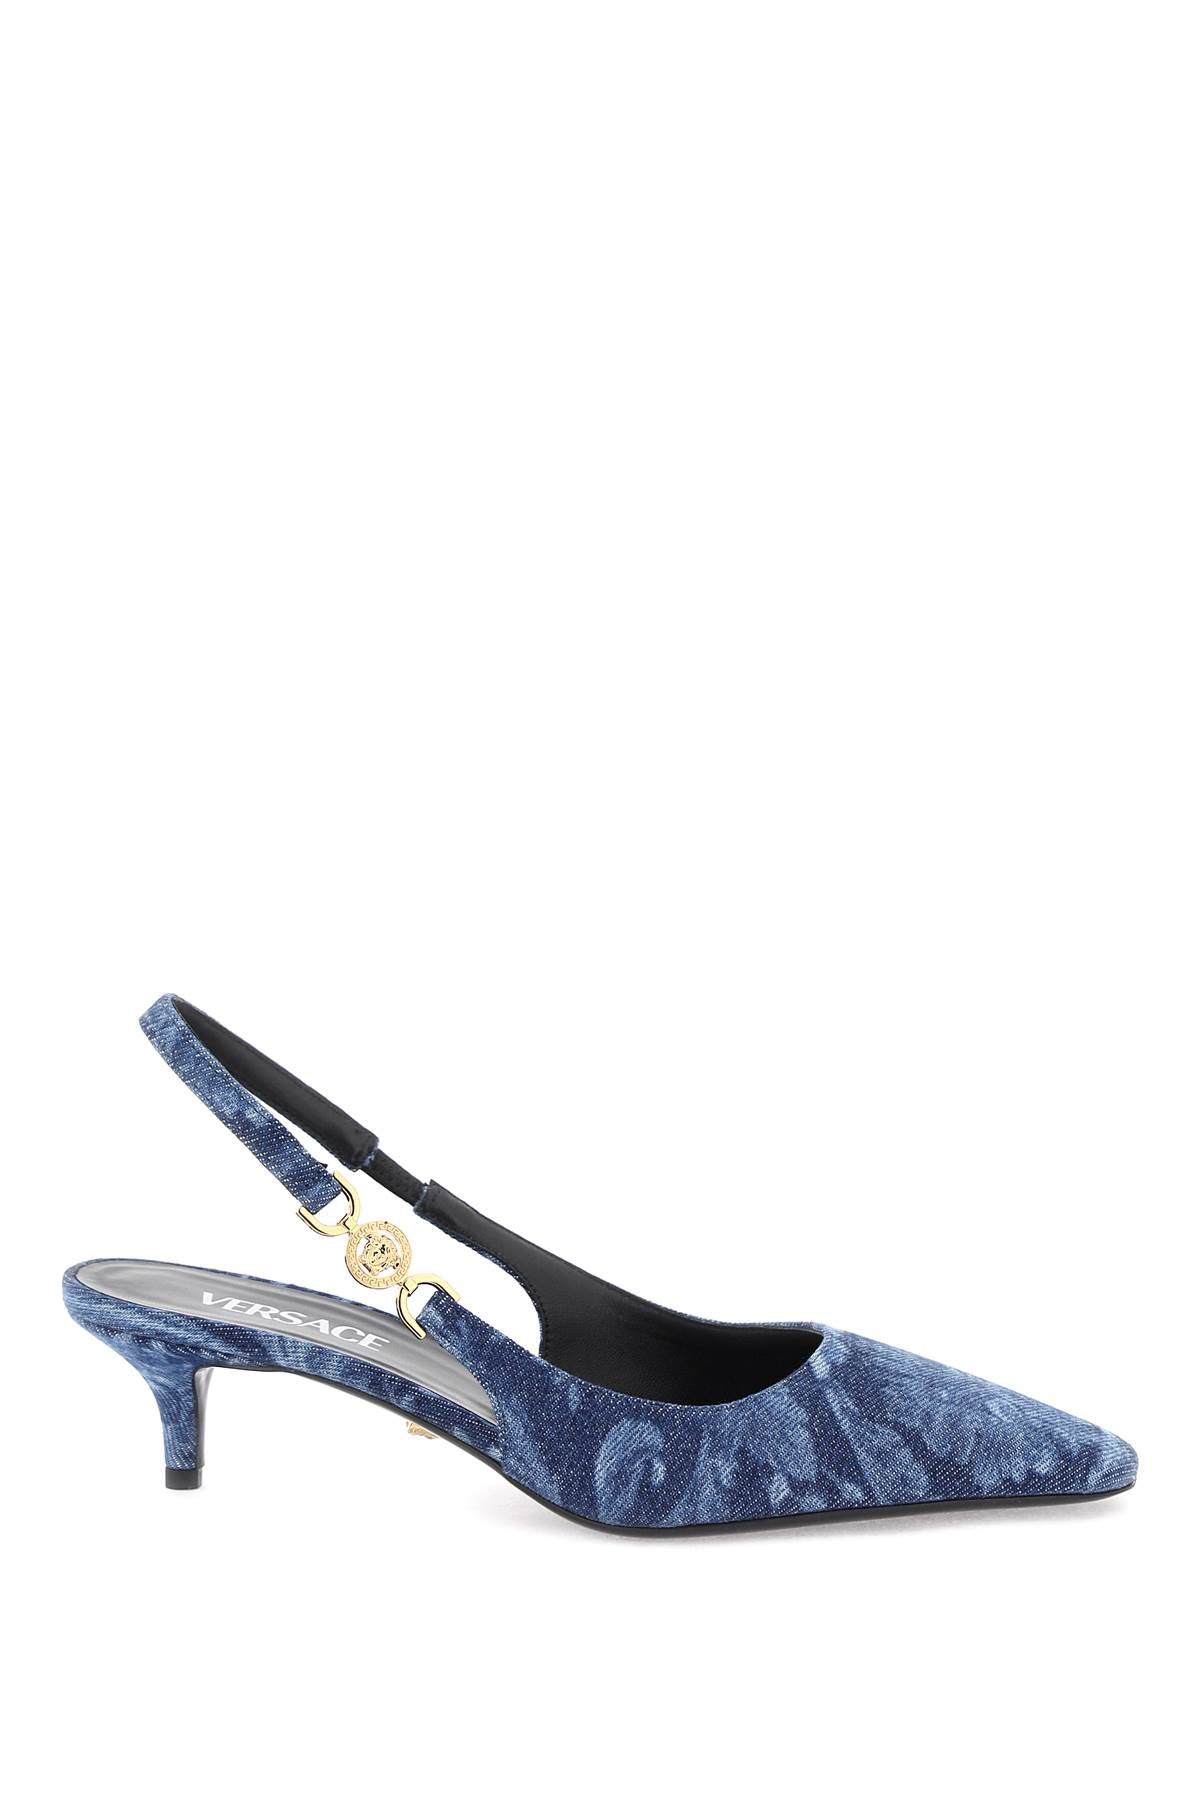 Đôi giày búp bê Baroque in denim - xanh vàng - Nữ